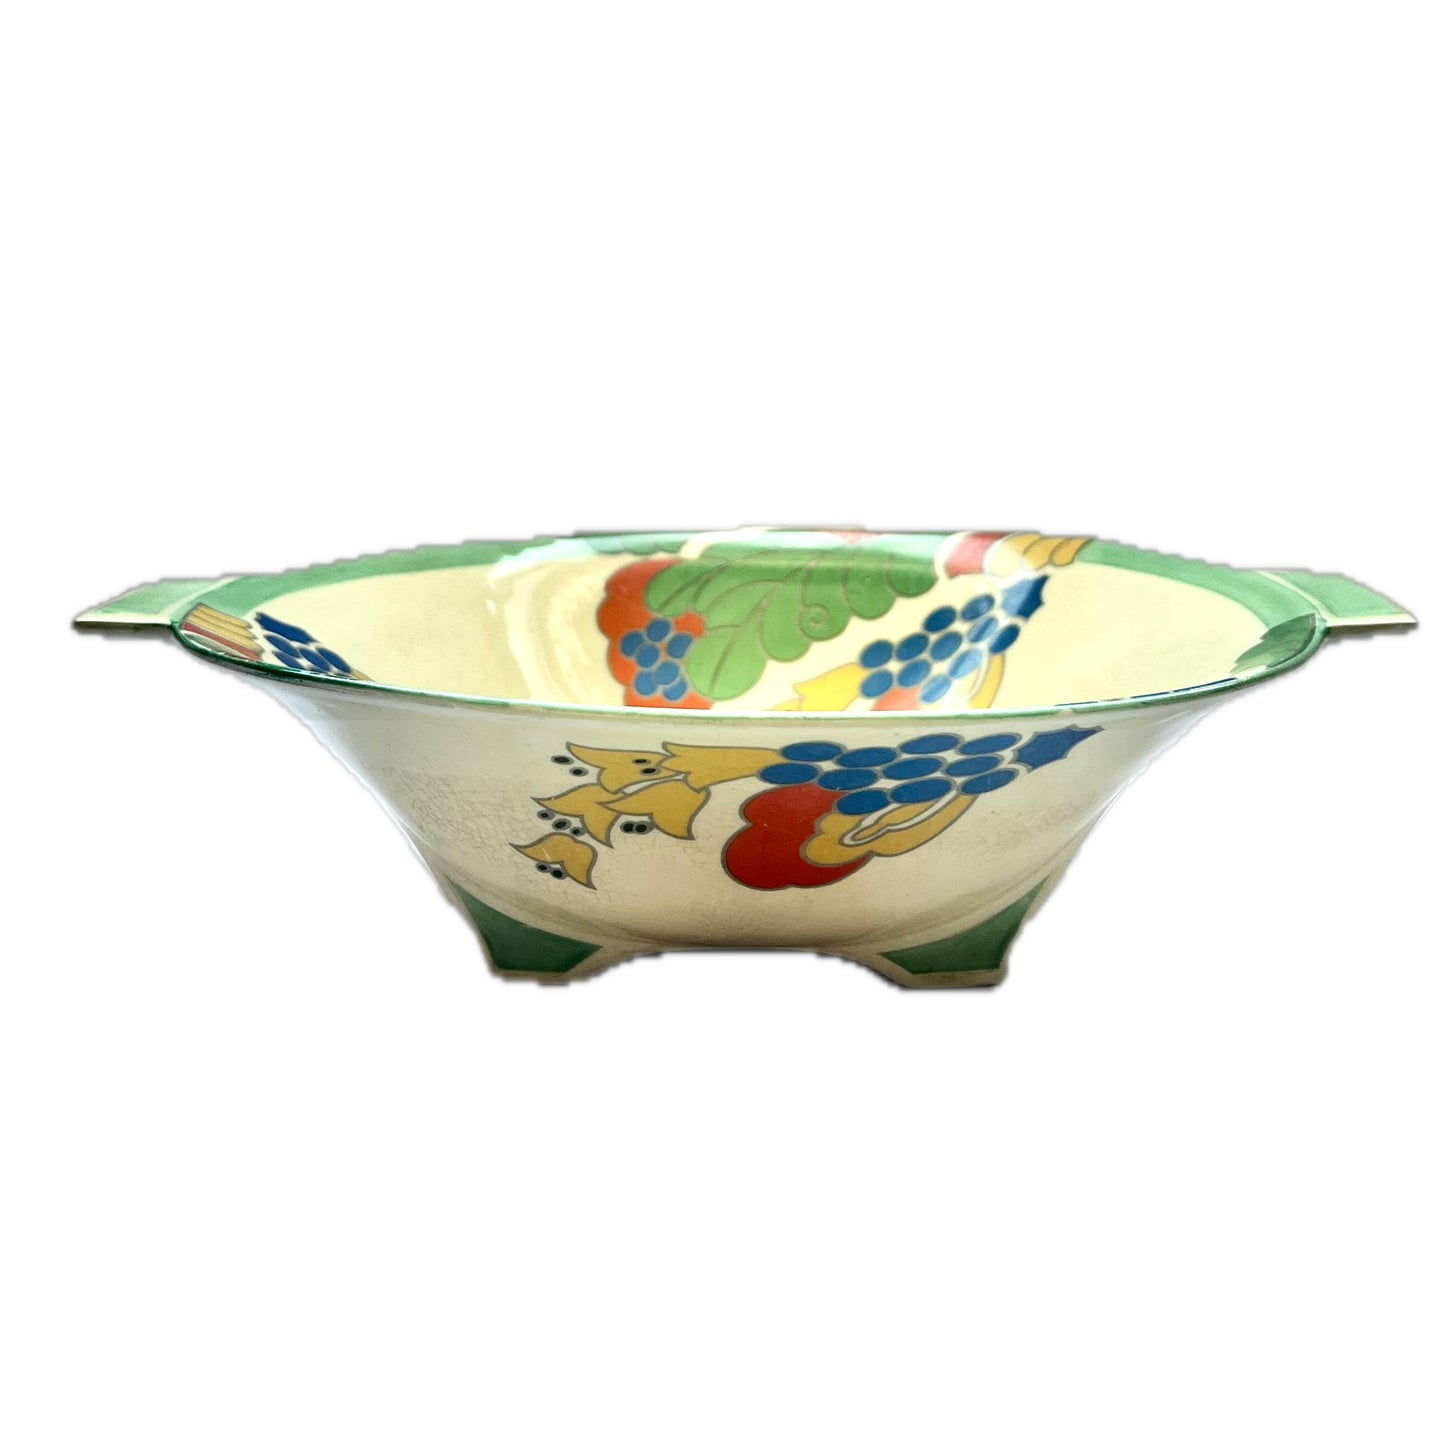 20 世纪 30 年代皇家道尔顿装饰艺术风格瓷器餐碗，采用 Caprice 图案